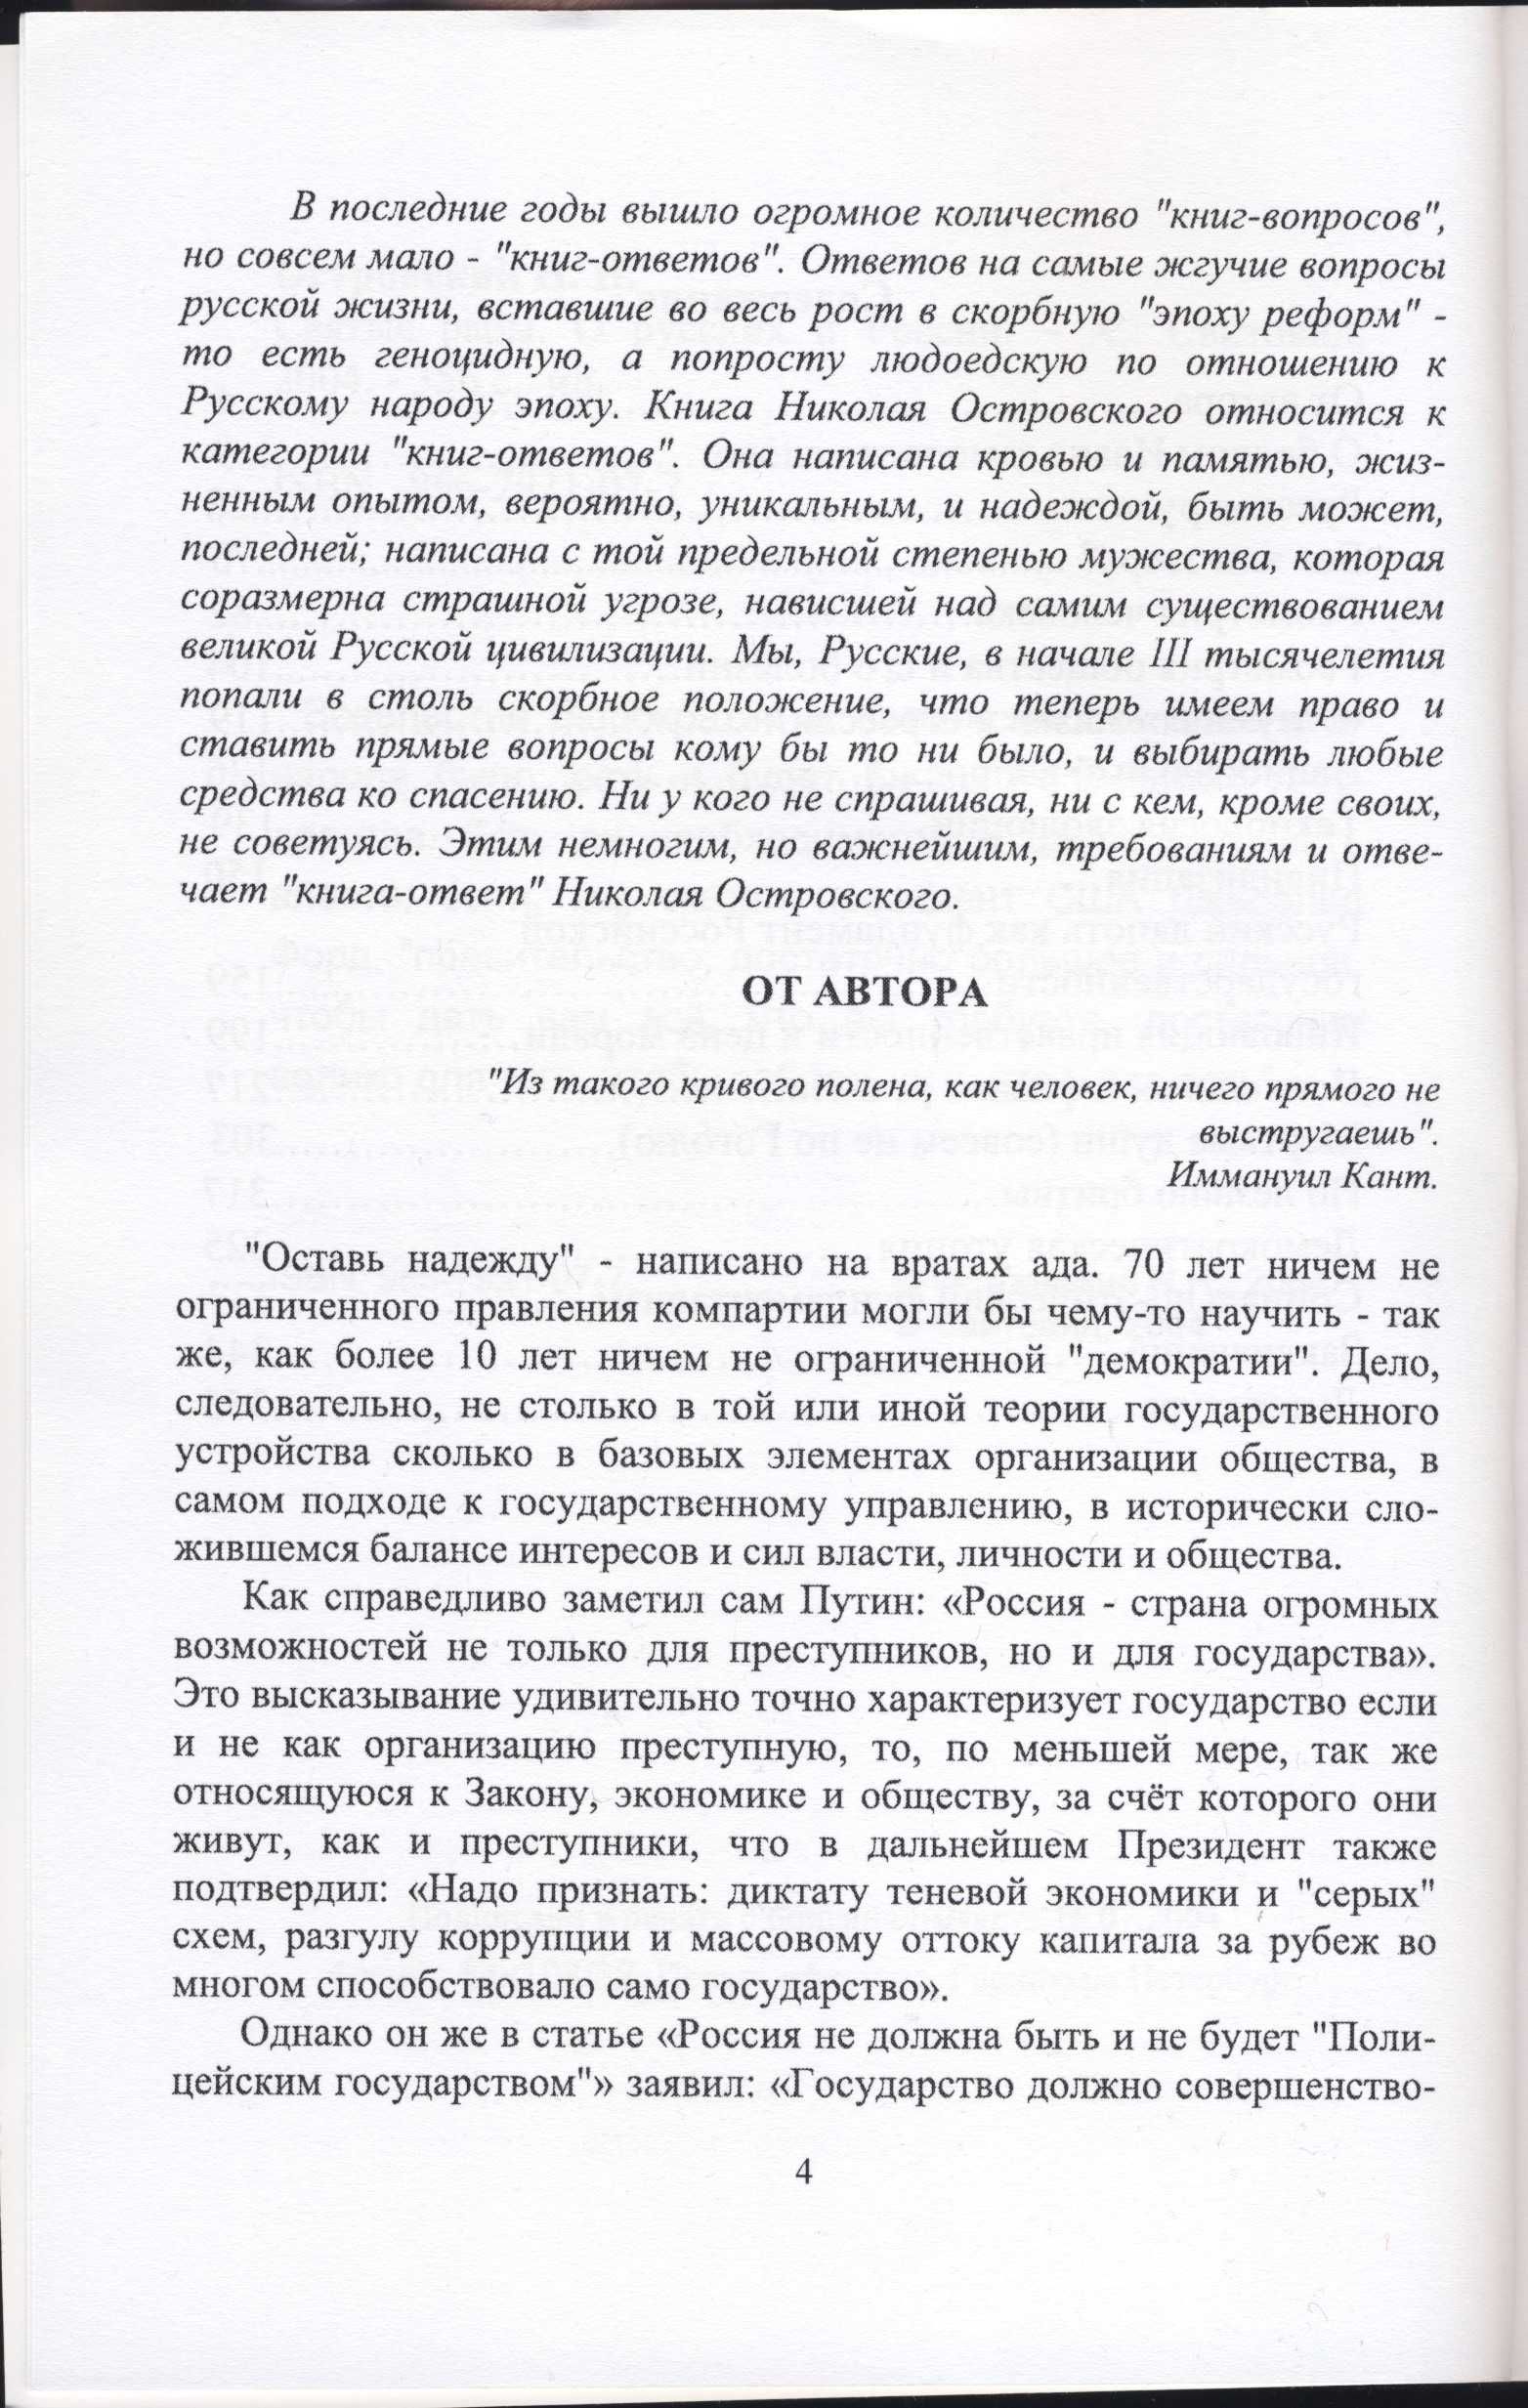 Островский Николай, 3 книги